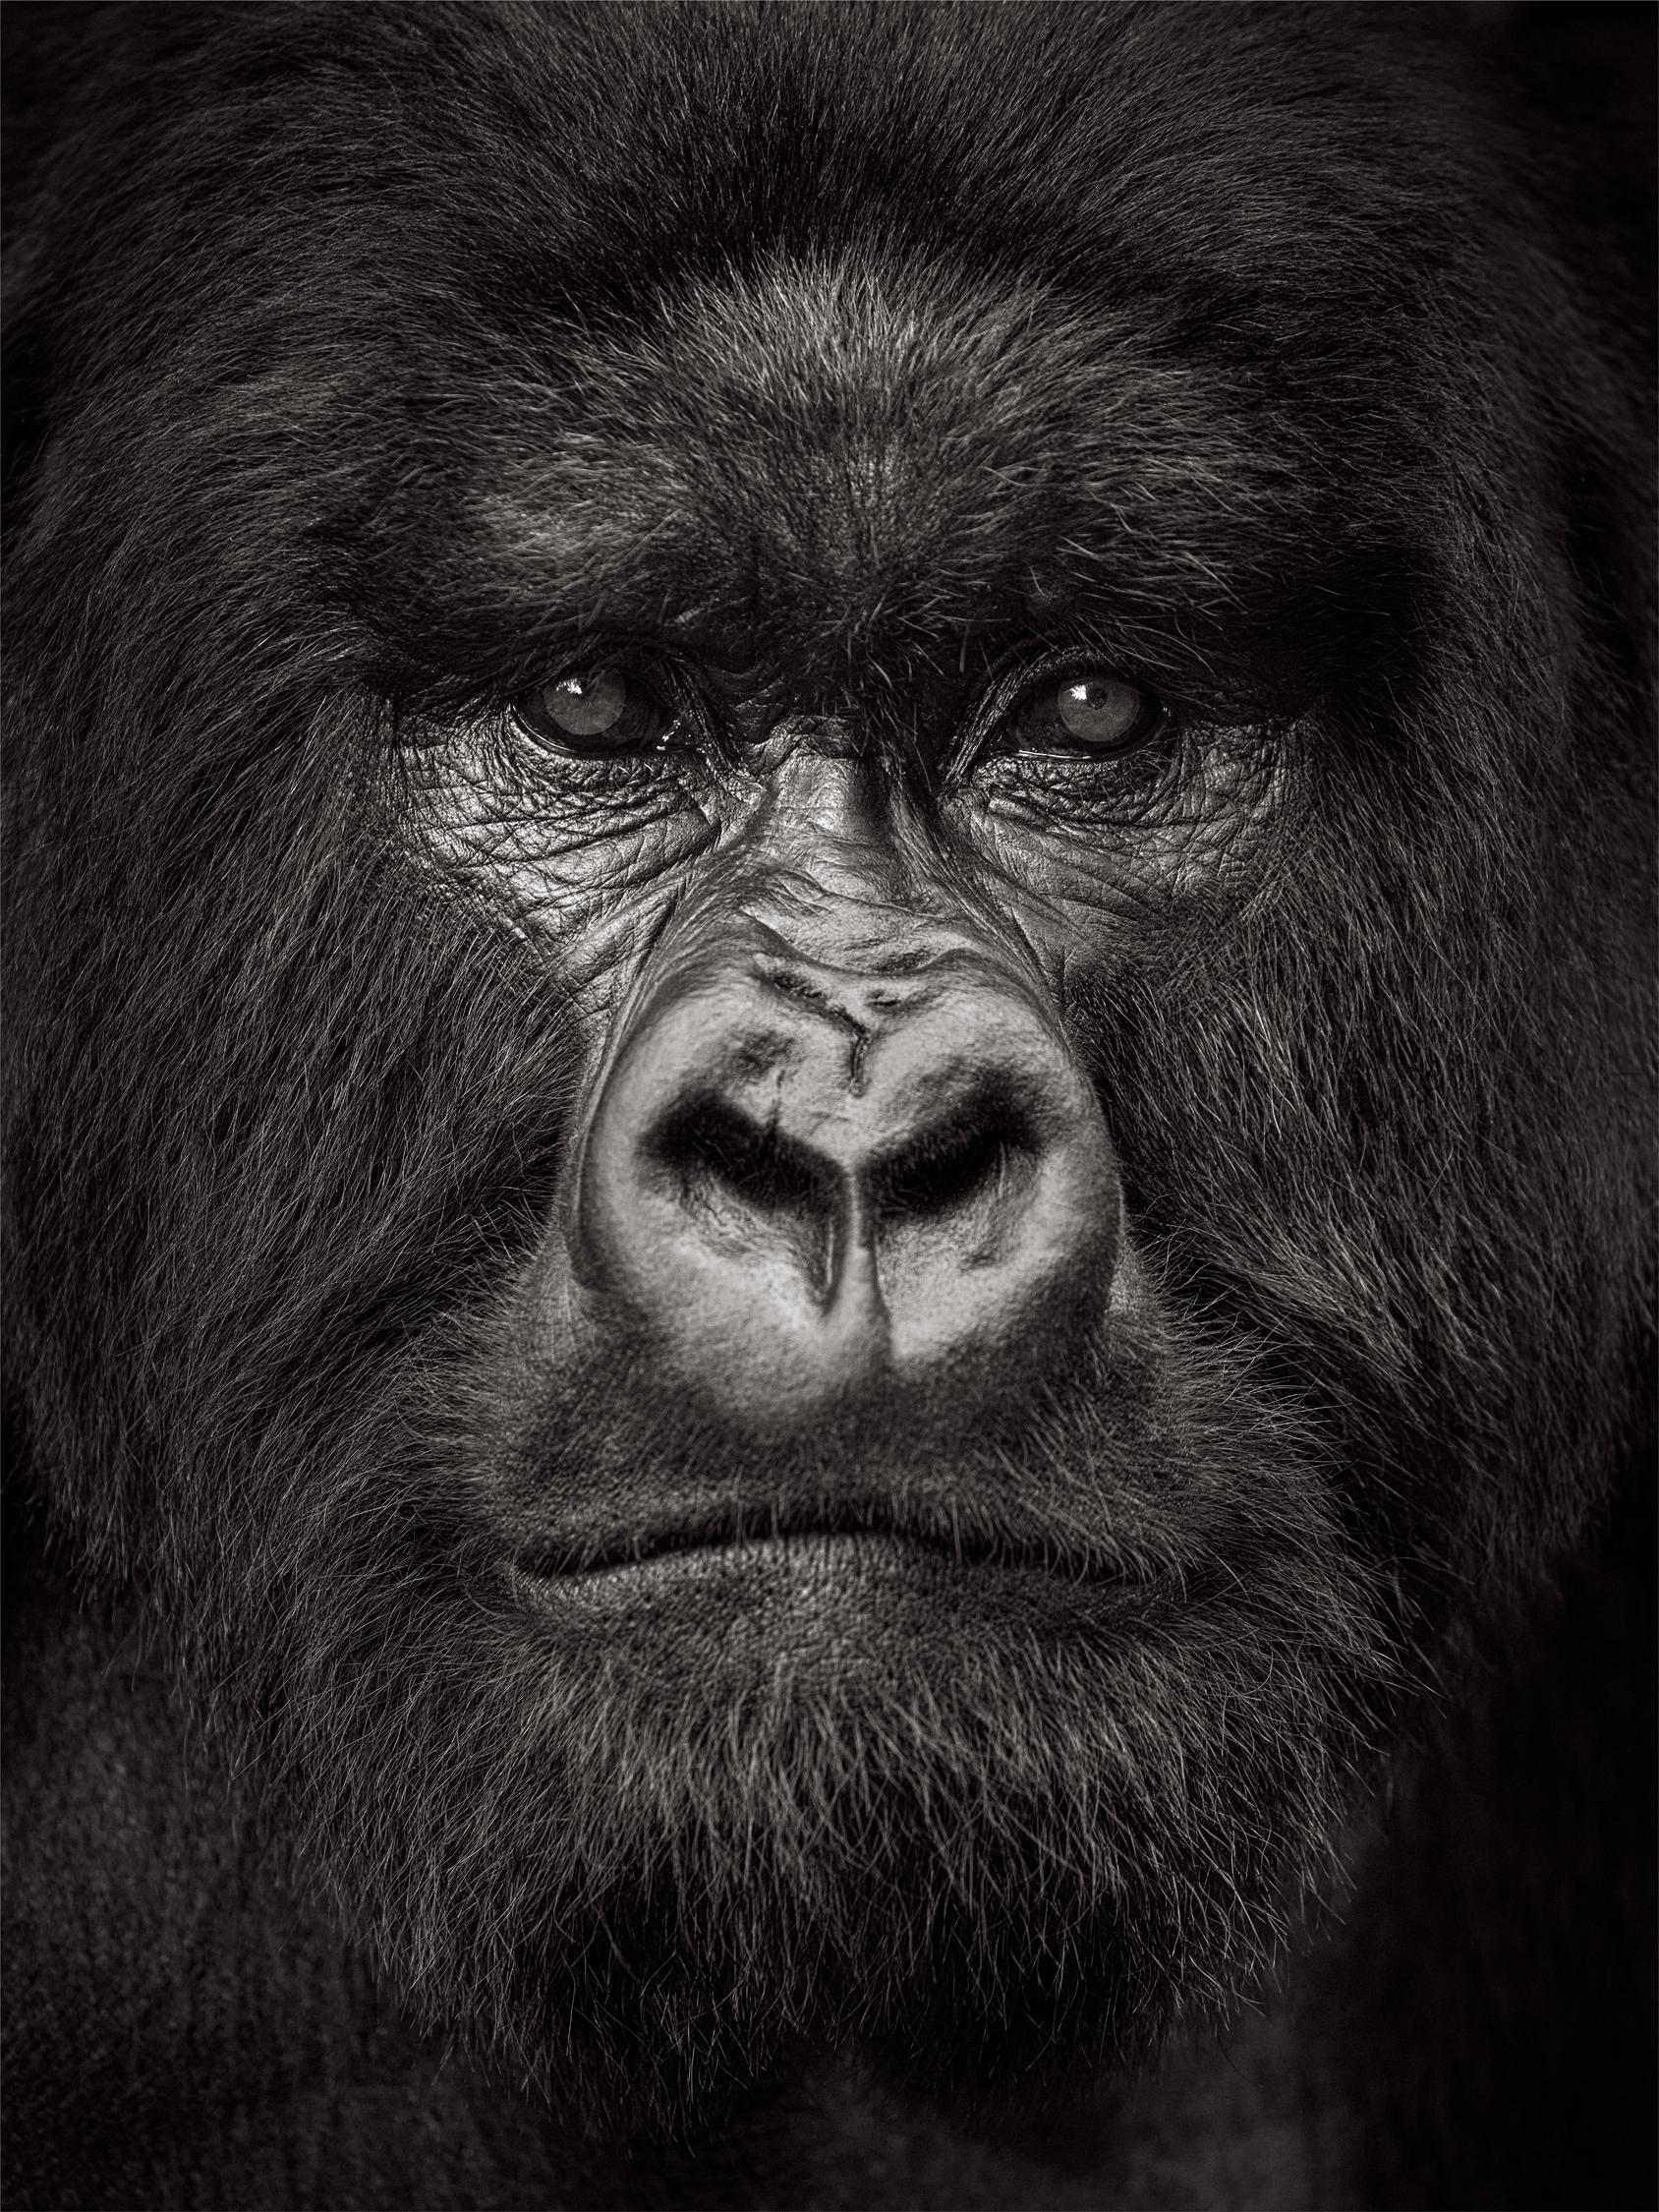 Drew Doggett Black and White Photograph – Intime, Nahaufnahme eines Gorilla-Porträts mit silbernem Rücken in Rwanda